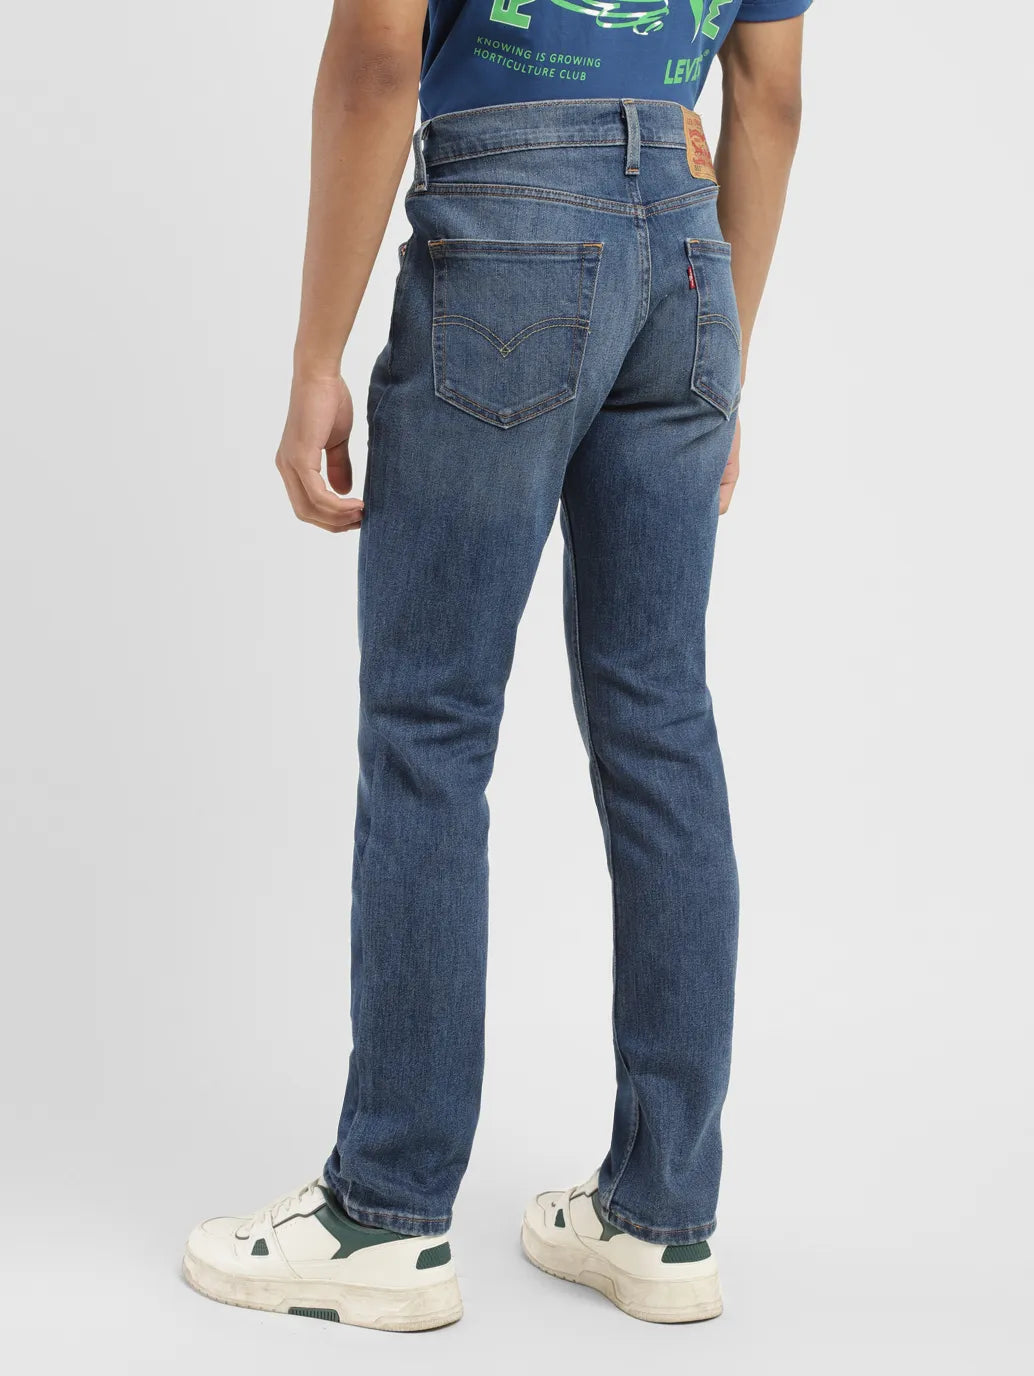 Men's 511 Mid Indigo Slim Fit Jeans